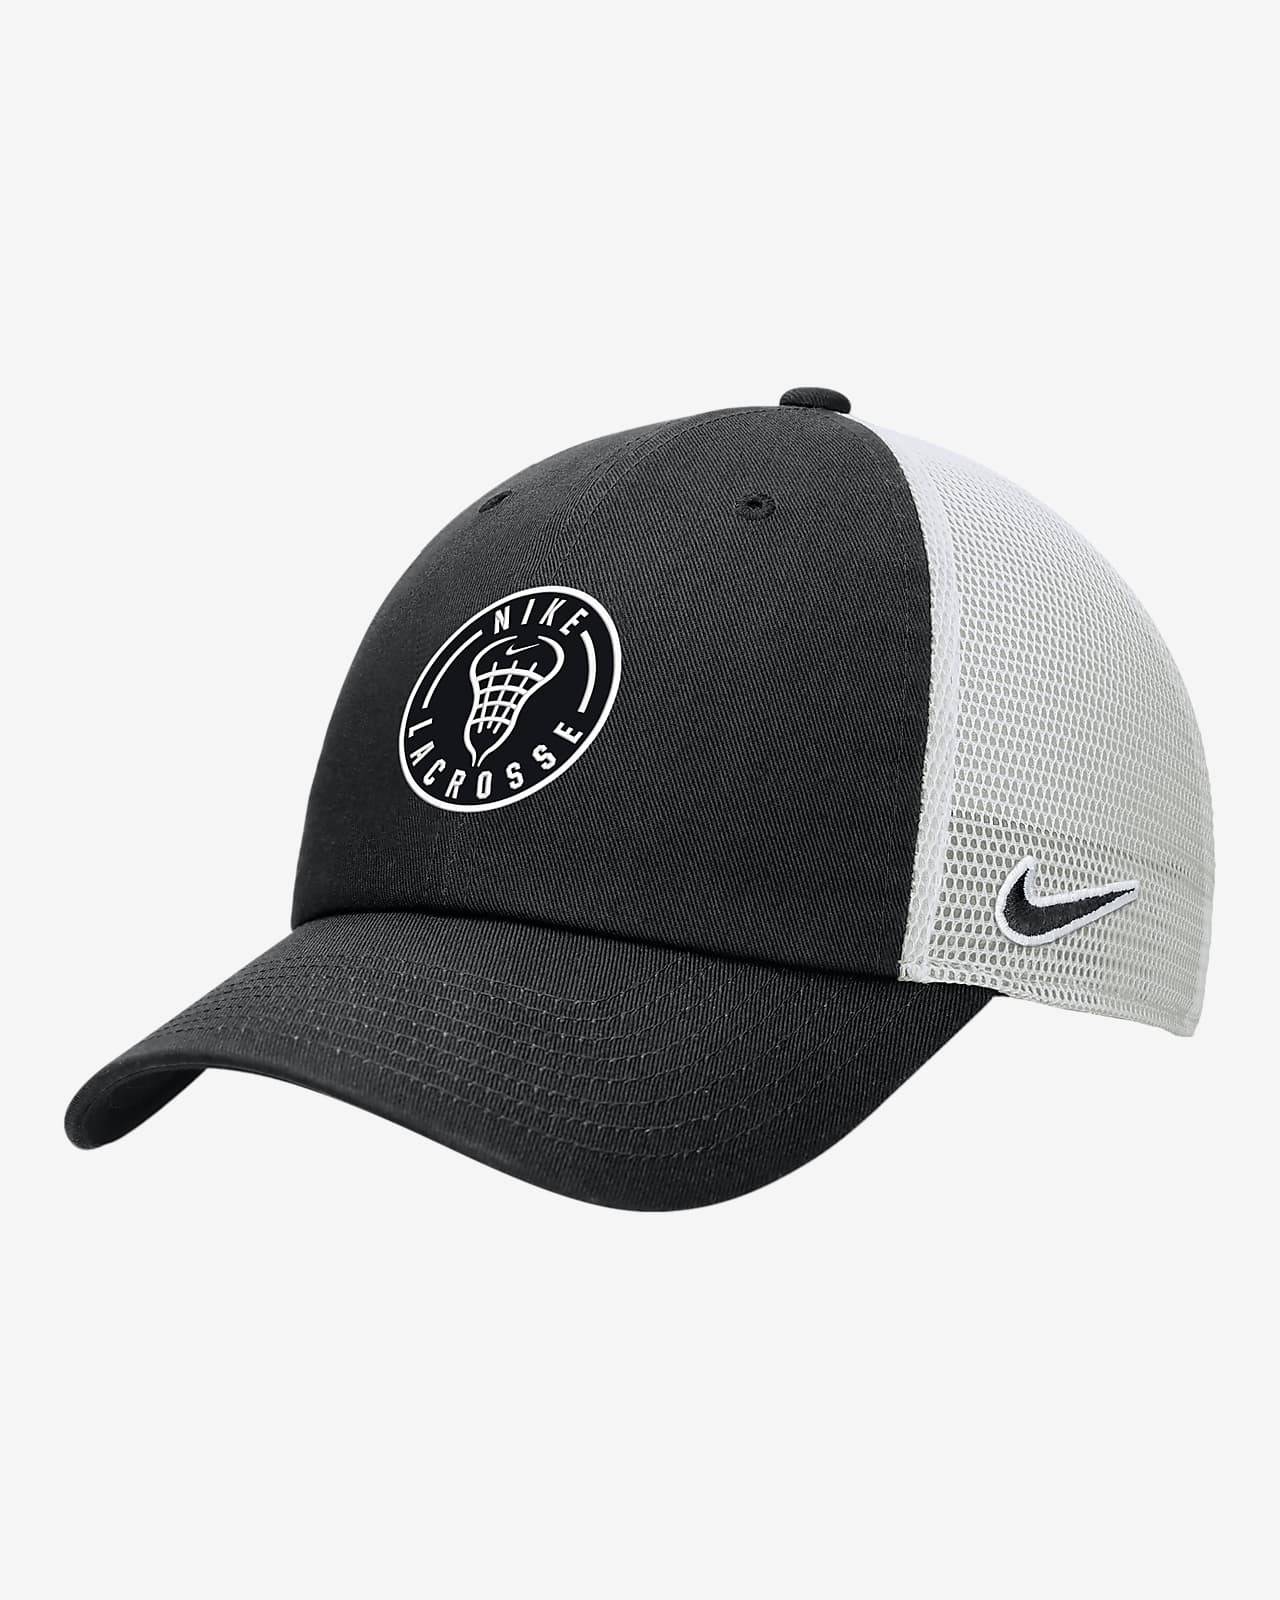 Nike Lacrosse Mesh Cap